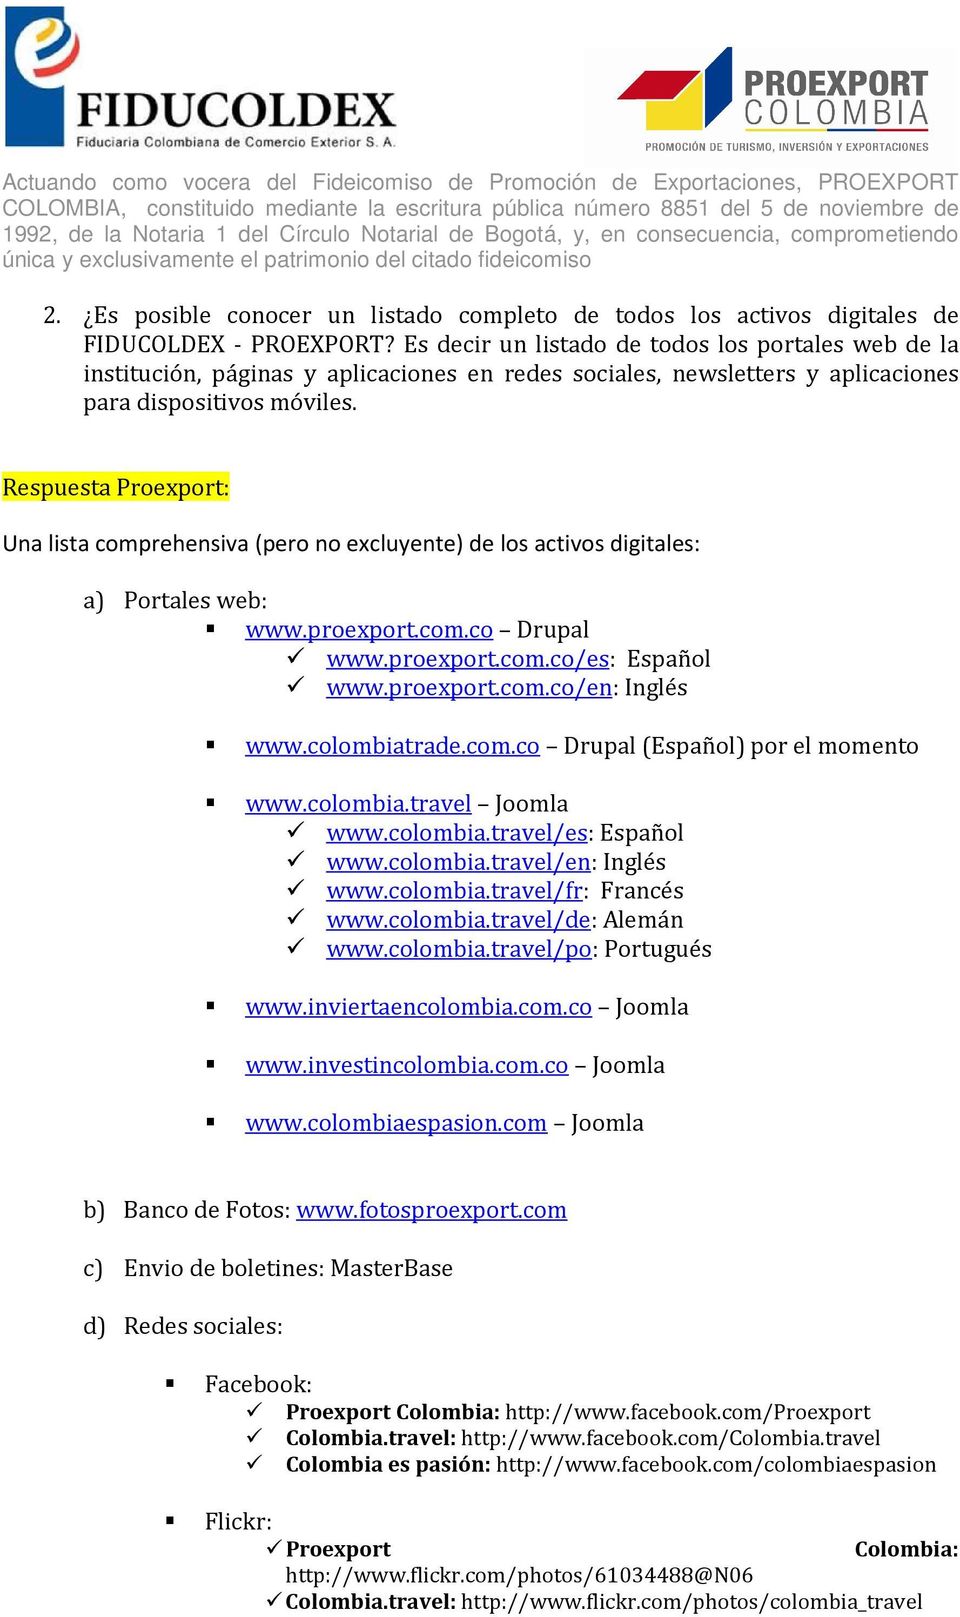 Una lista comprehensiva (pero no excluyente) de los activos digitales: a) Portales web: www.proexport.com.co Drupal www.proexport.com.co/es: Español www.proexport.com.co/en: Inglés www.colombiatrade.